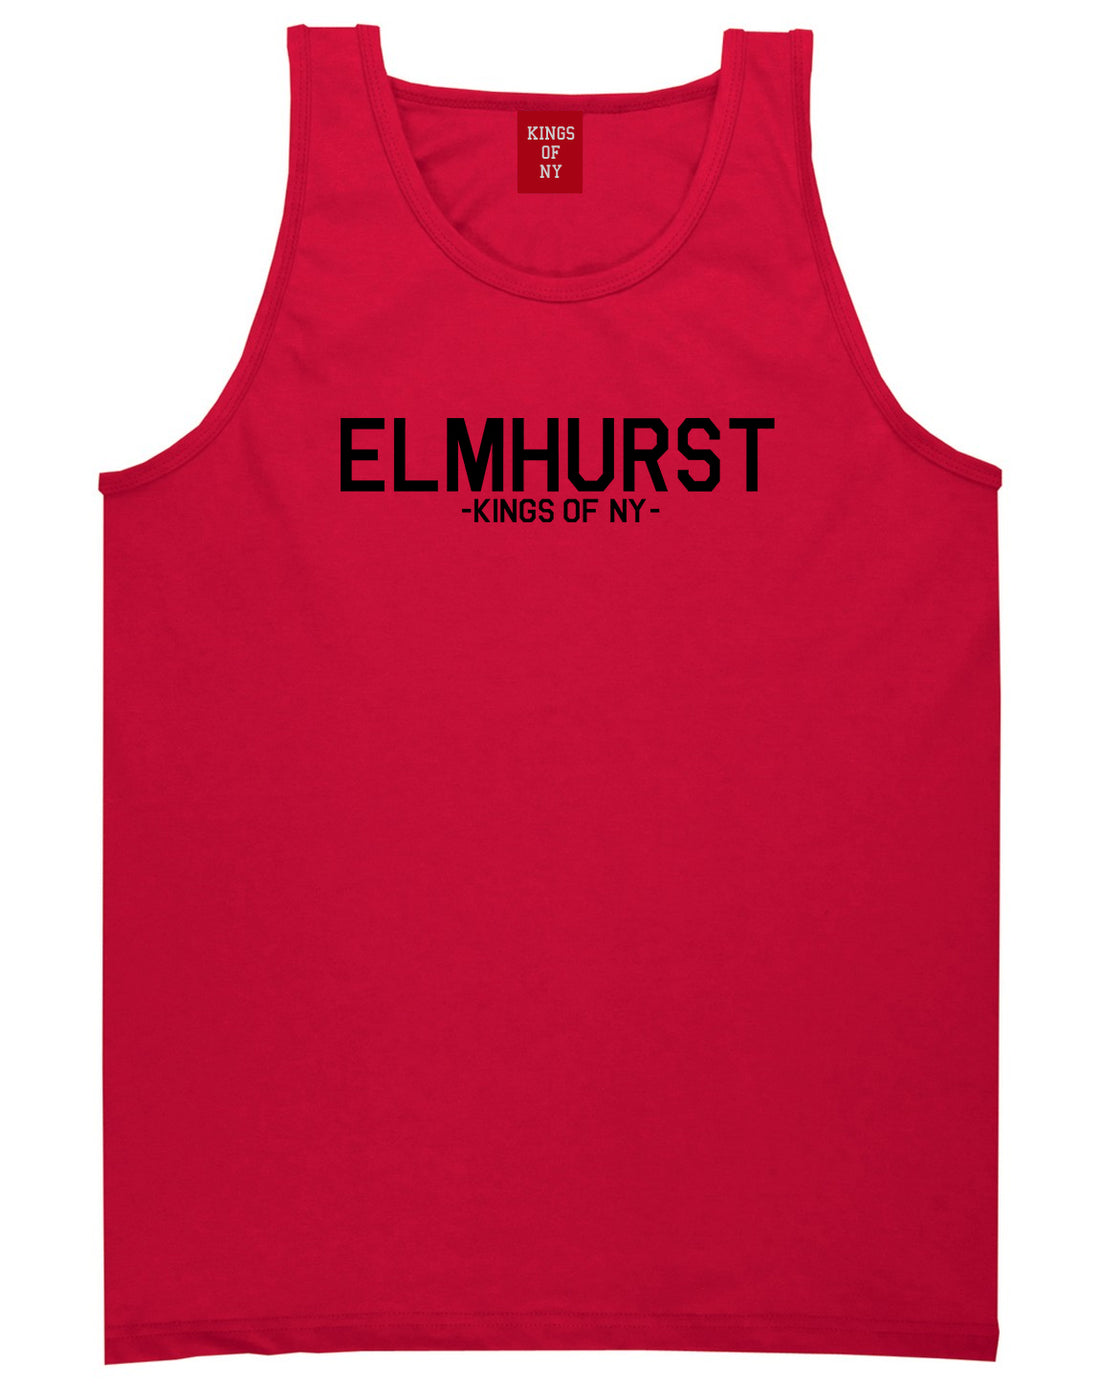 Elmhurst Queens New York Mens Tank Top Shirt Red